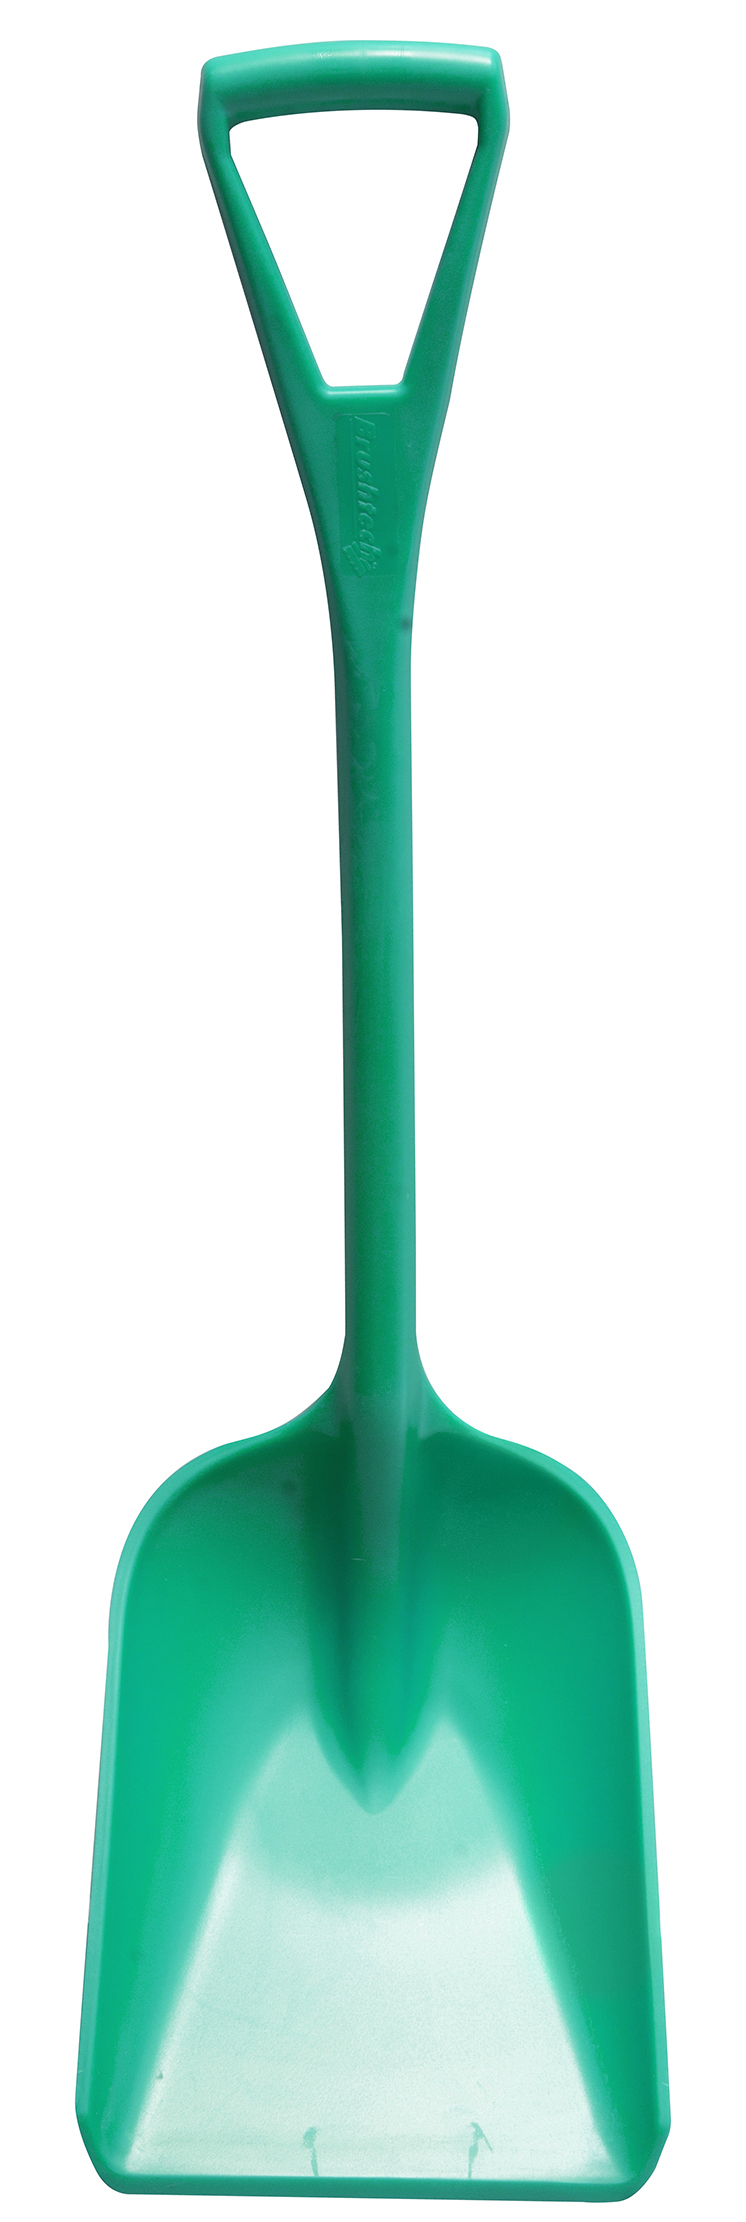 Лопата HACCPER малая, 920х260 мм, зеленая